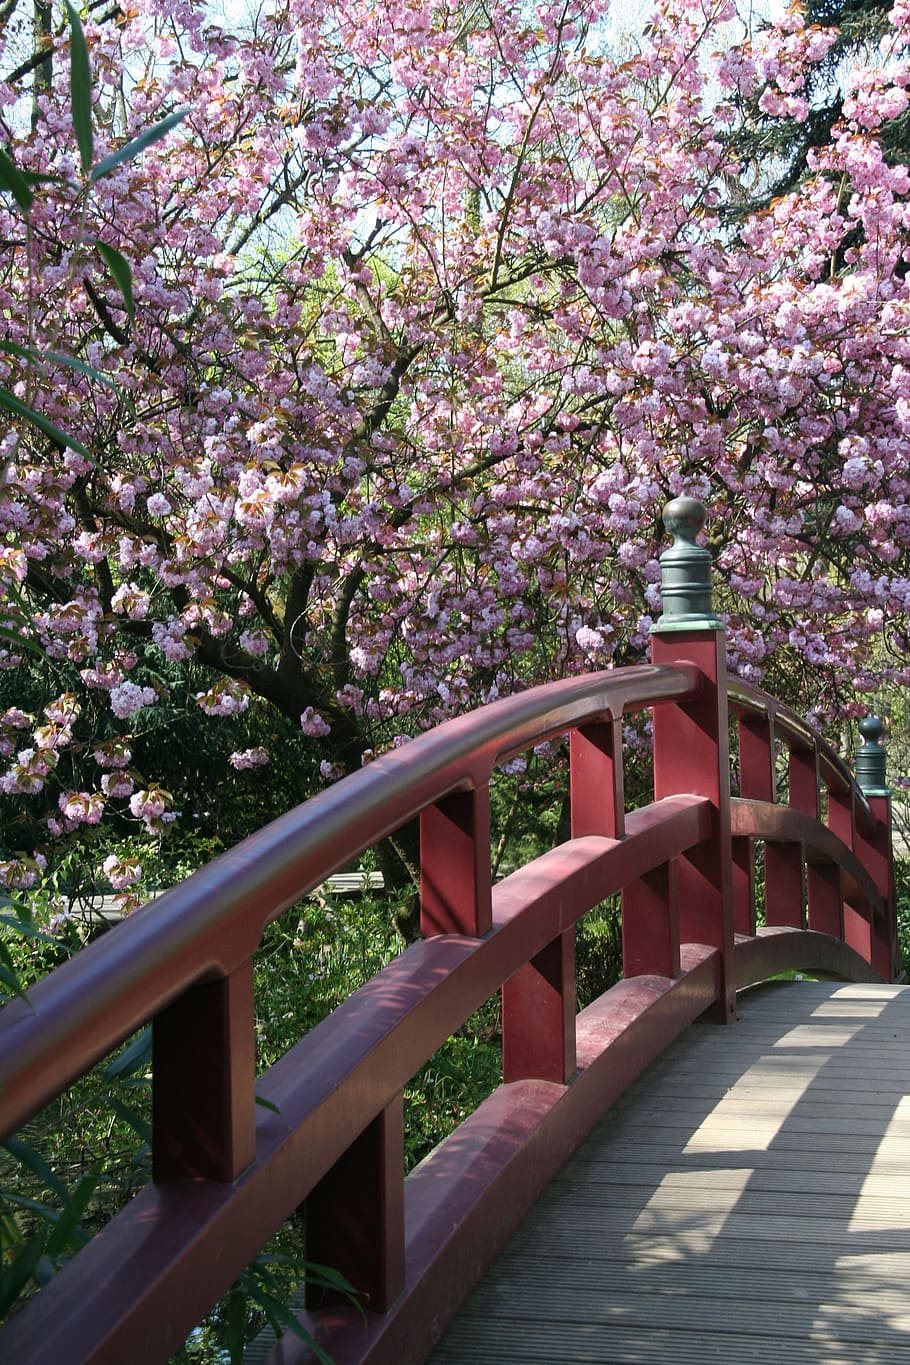 árbol, flor, naturaleza, parque, planta, jardín japonés en palancakusen, puente, japonés, flor de cerezo, zen